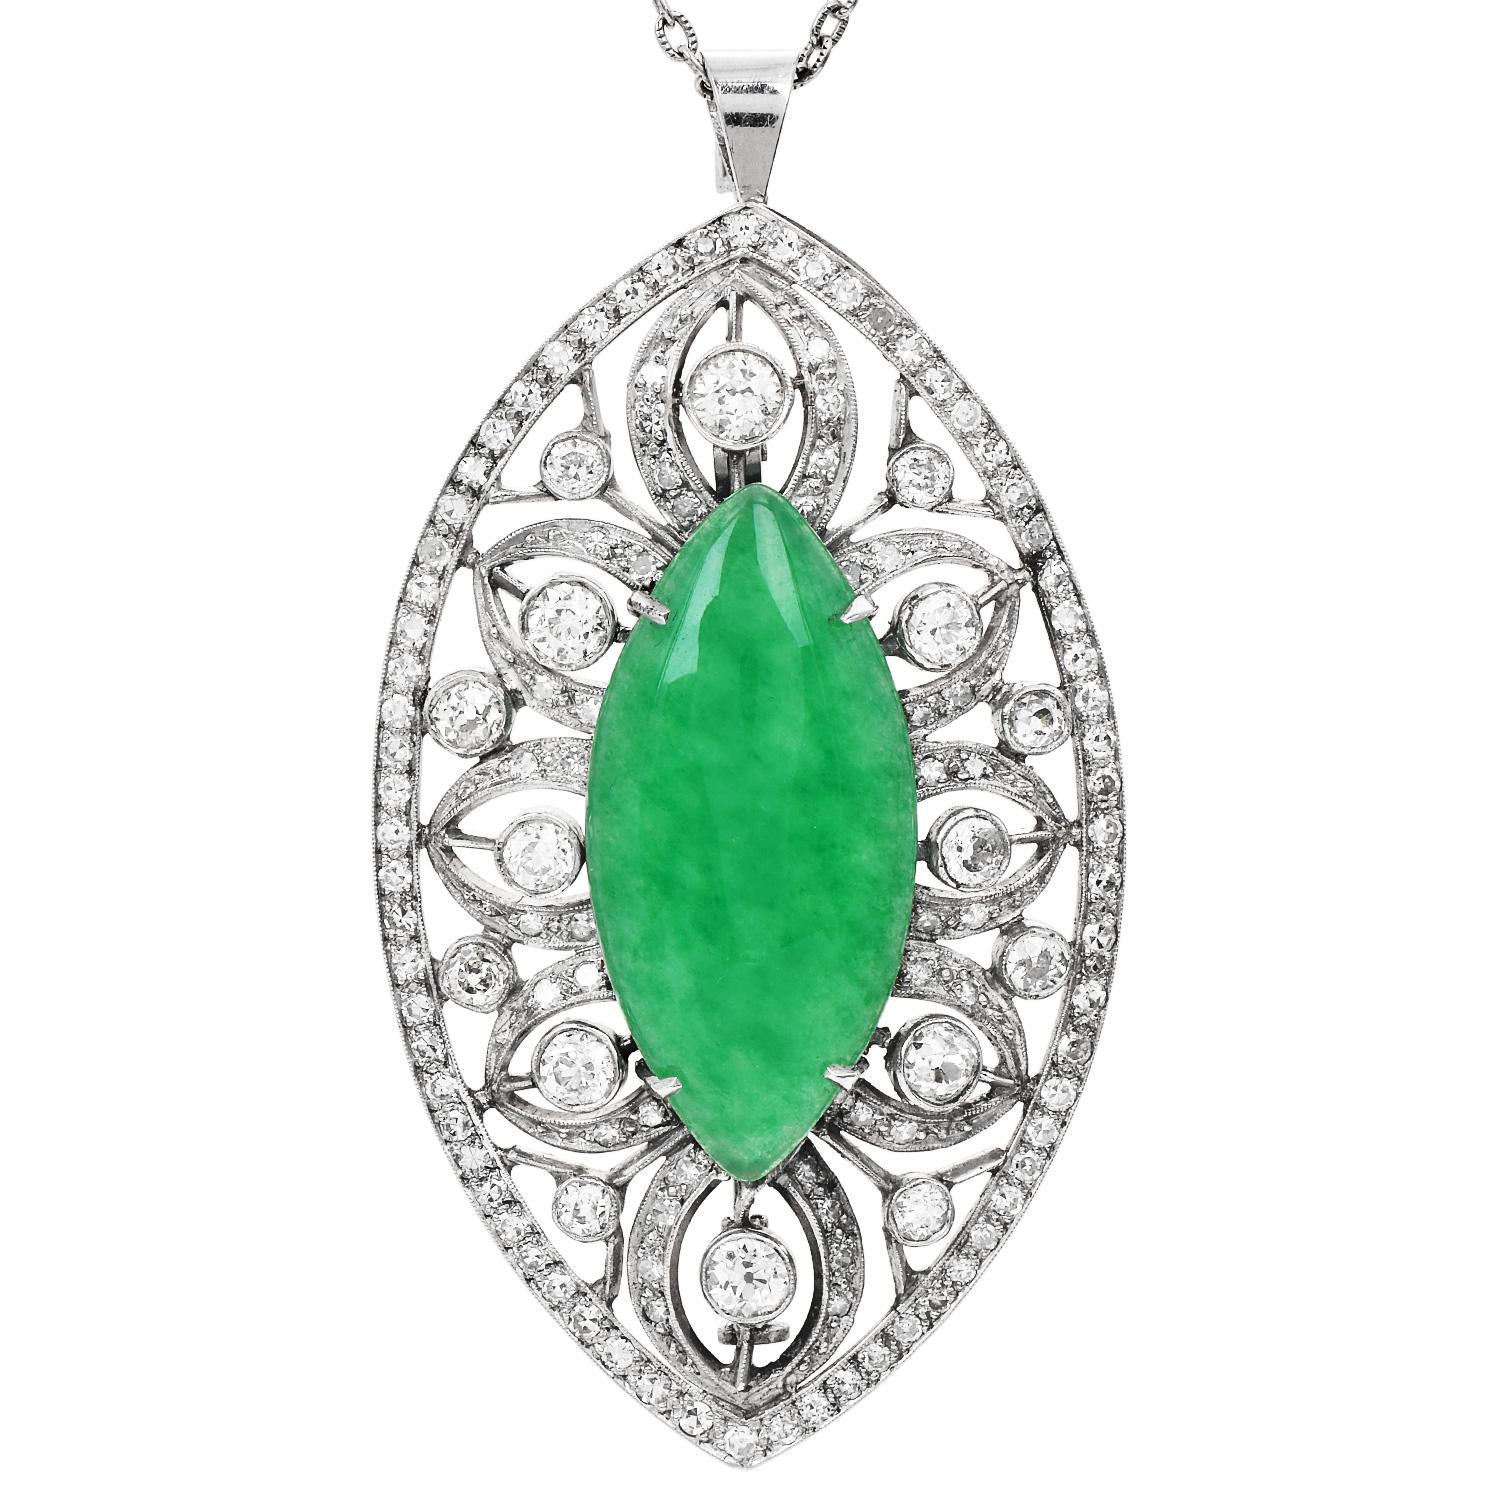 Die antike Brosche mit Diamanten im Altminenschliff und apfelgrüner Jade mit floralen Marquise-Anhängern aus Platin ist ein bemerkenswertes Schmuckstück, das Eleganz und antiken Charme verkörpert.

In der Mitte der Brosche befindet sich ein üppiger,